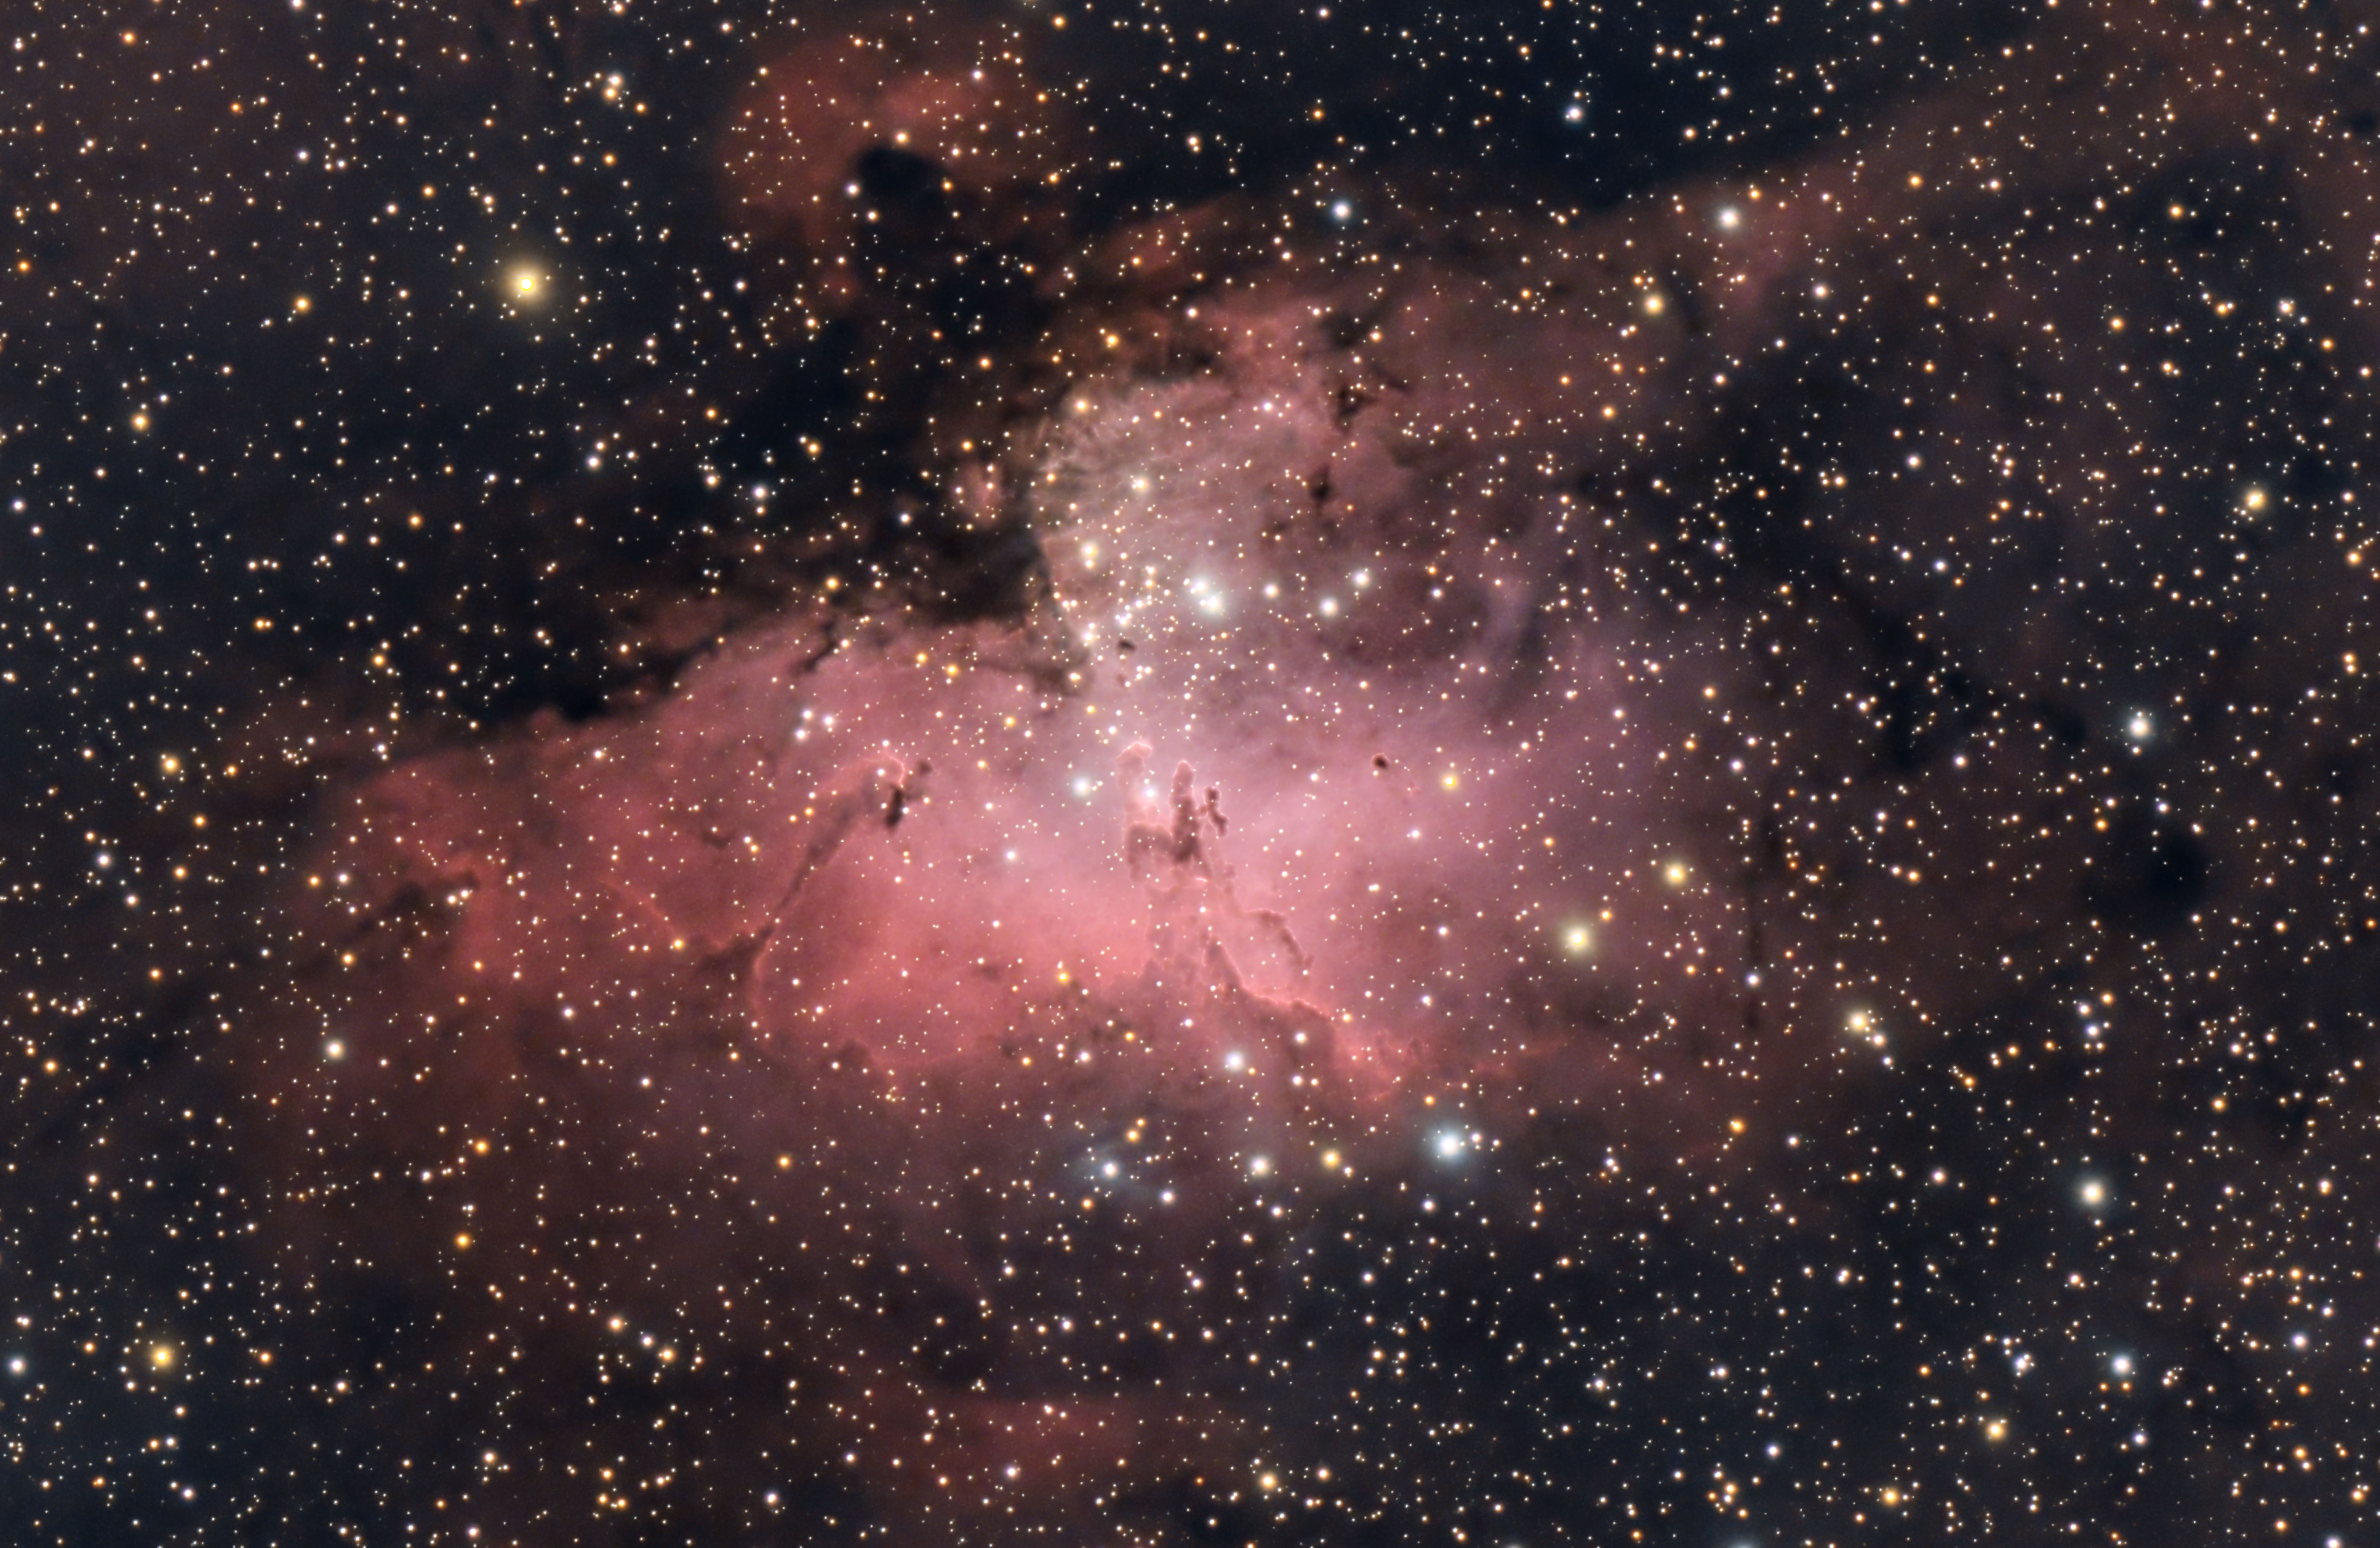 The "Eagle Nebula"